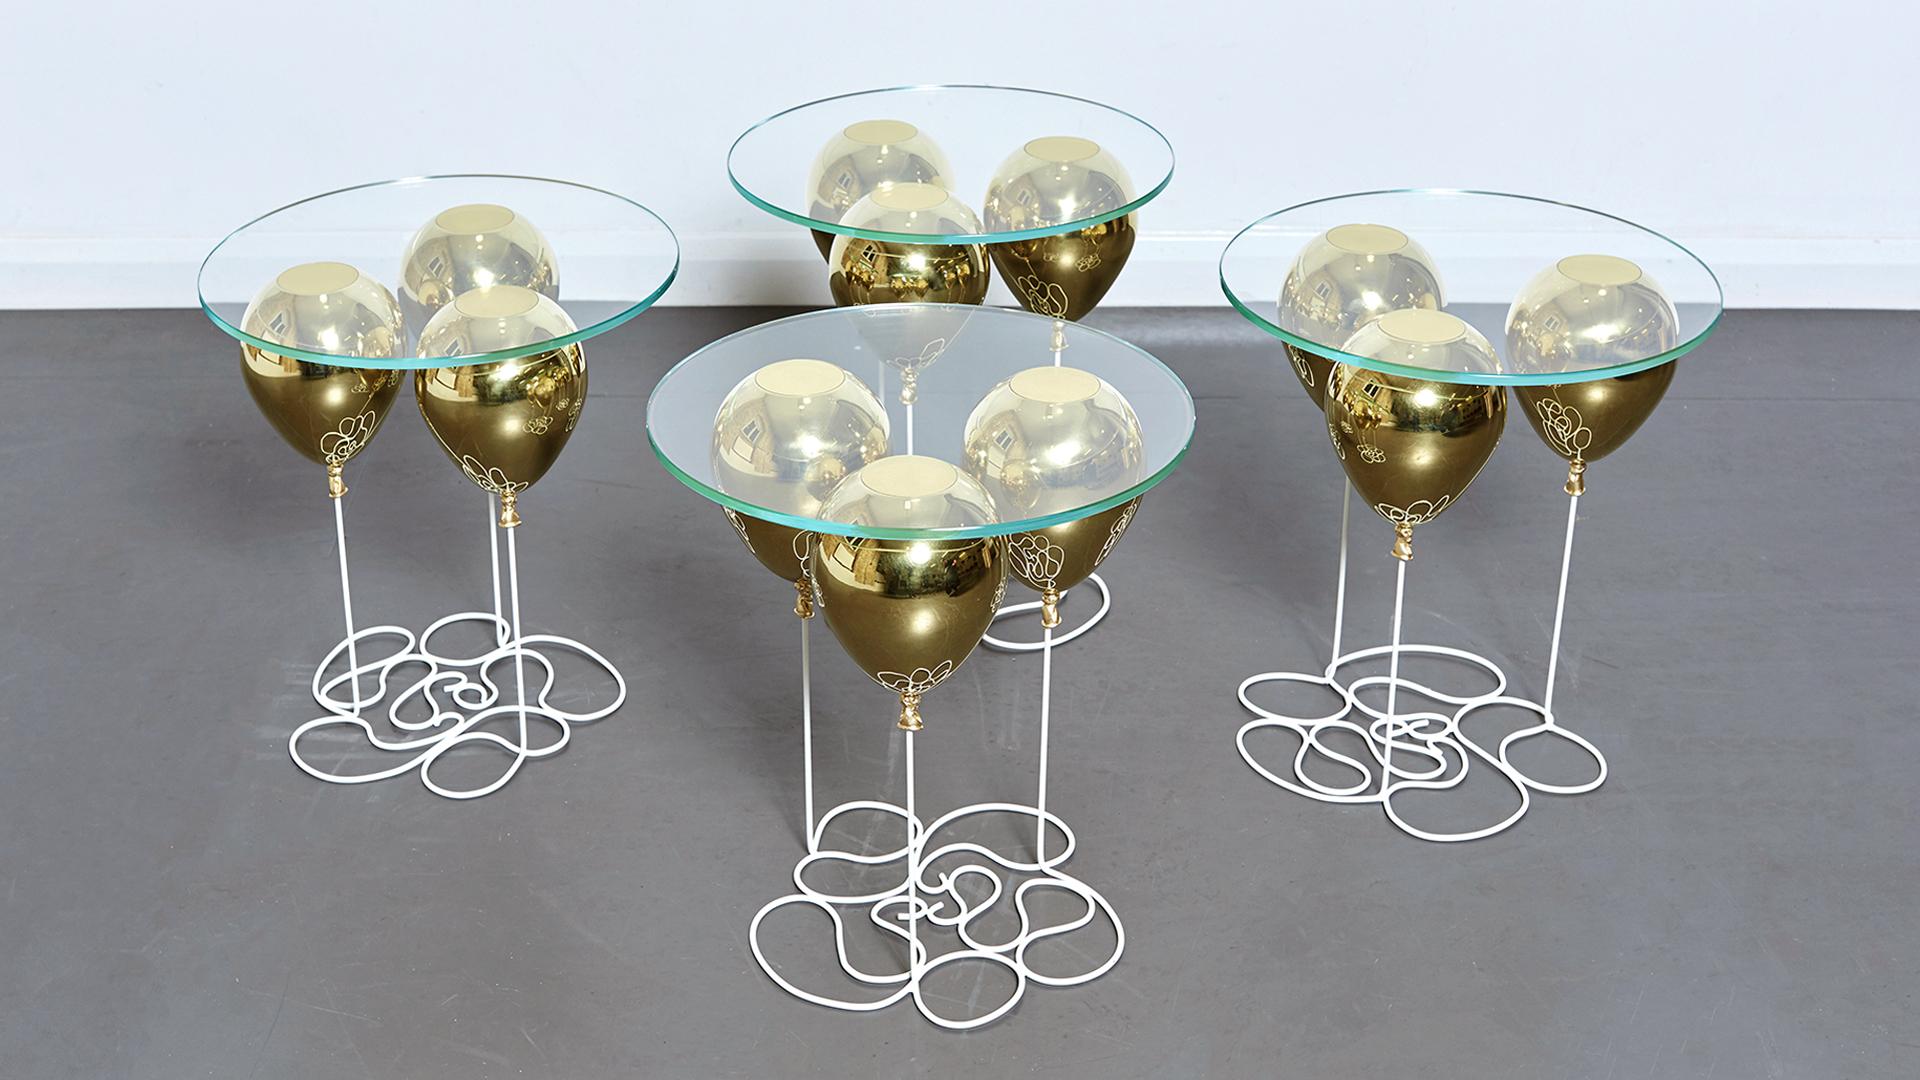 Der UP Balloon Side Table ist ein verspieltes Trompe L'Oeil mit goldenen und silbernen Ballons, die die Illusion einer schwebenden Glastischplatte vermitteln. 

Ein aufmunterndes Design von Chris Duffy, das die Fantasie anregt, mit den Konzepten